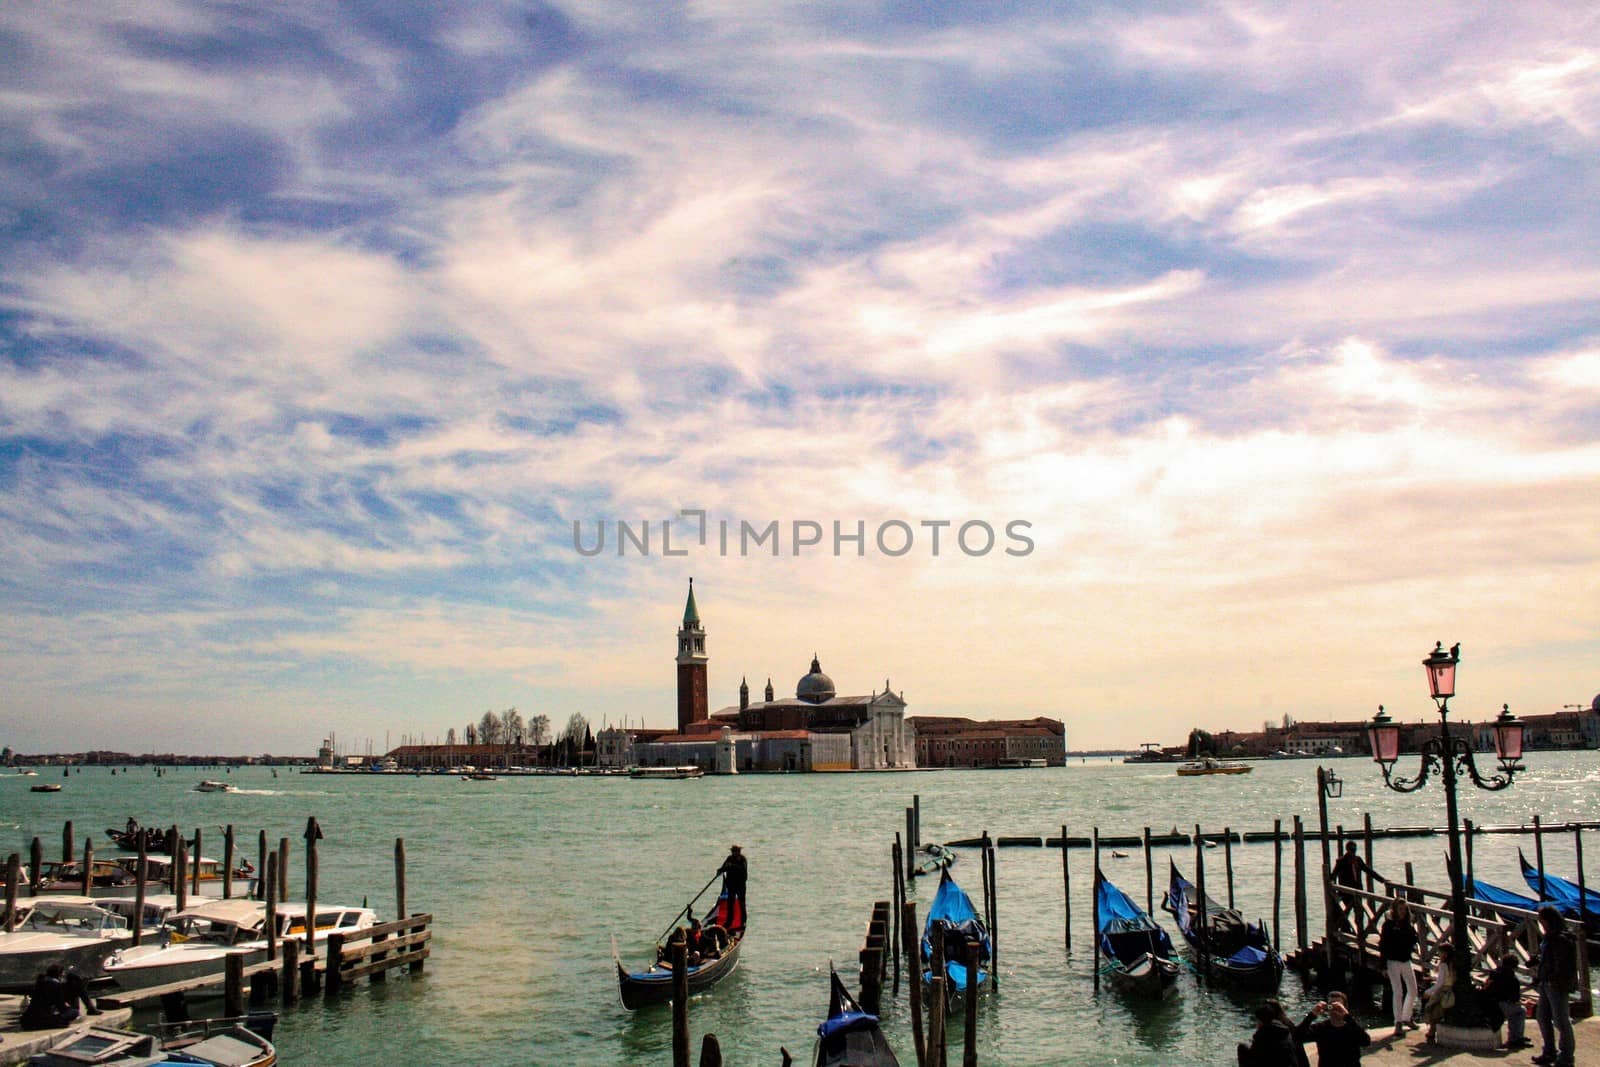 At Venice -Italy /On April/02/2010 - the church of San Giorgio Maggiore in Venetian lagoon 